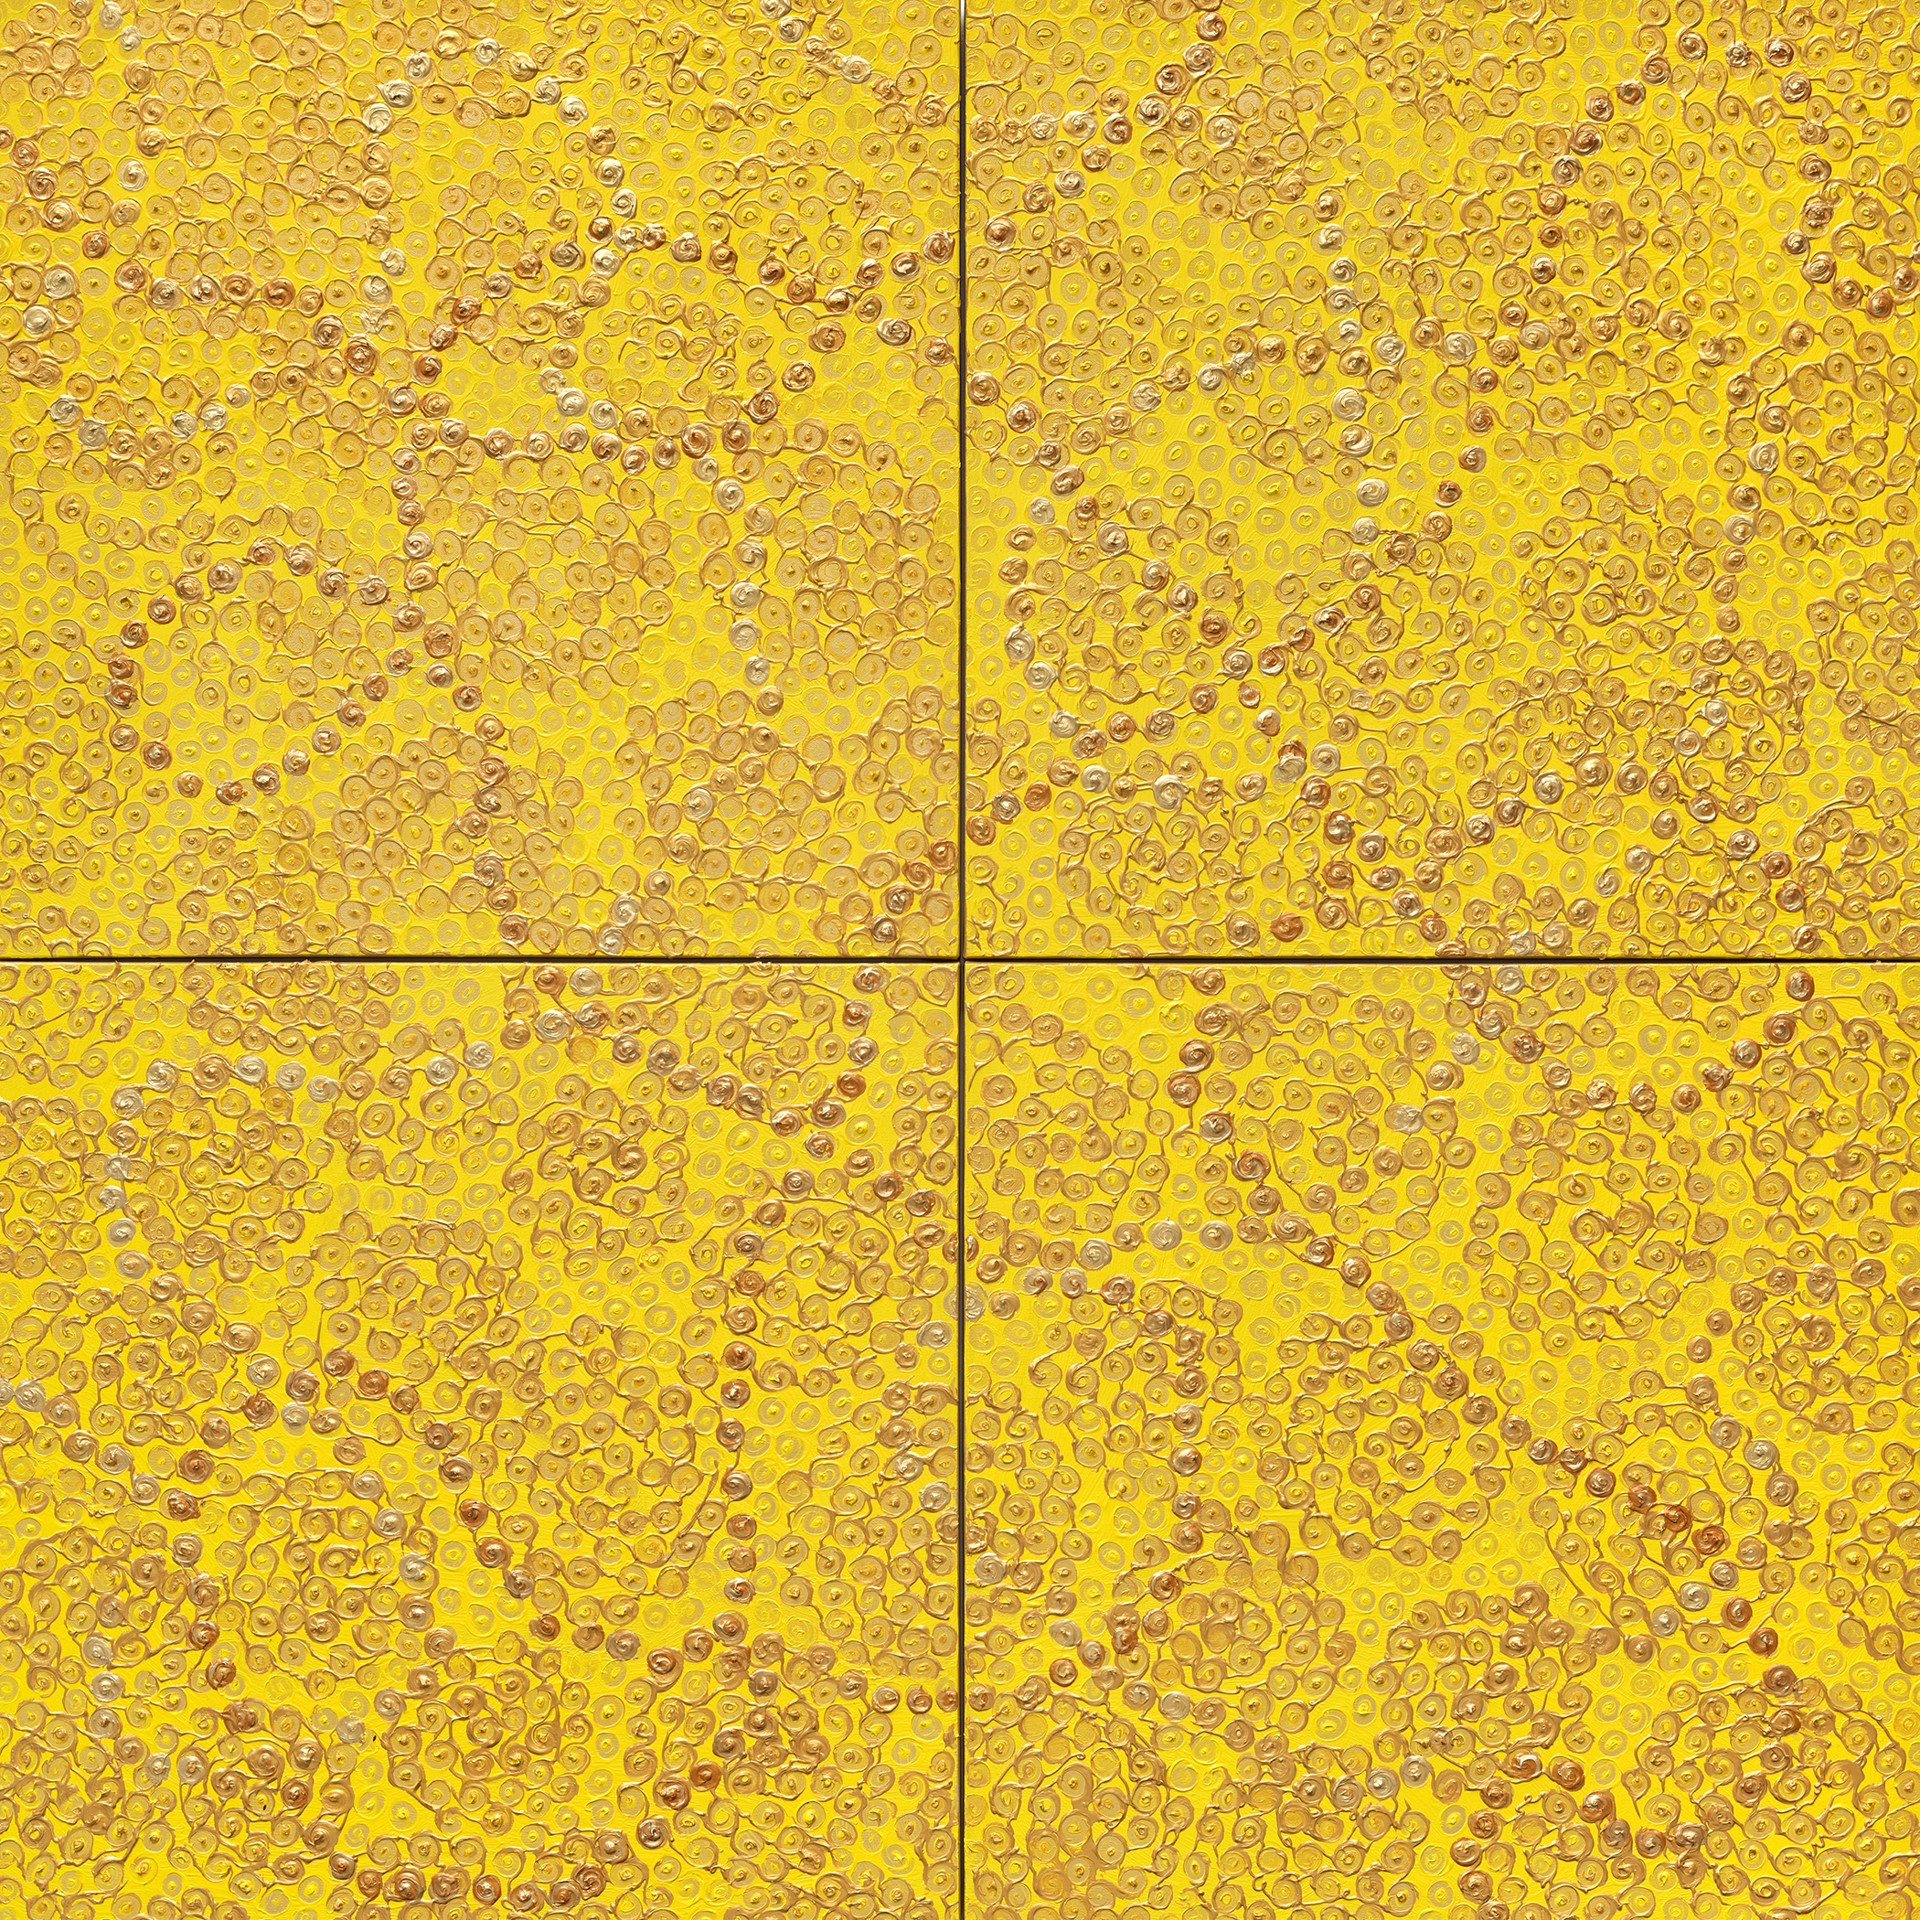 Brocades-Yellow Gold by Uma Rani Iyli